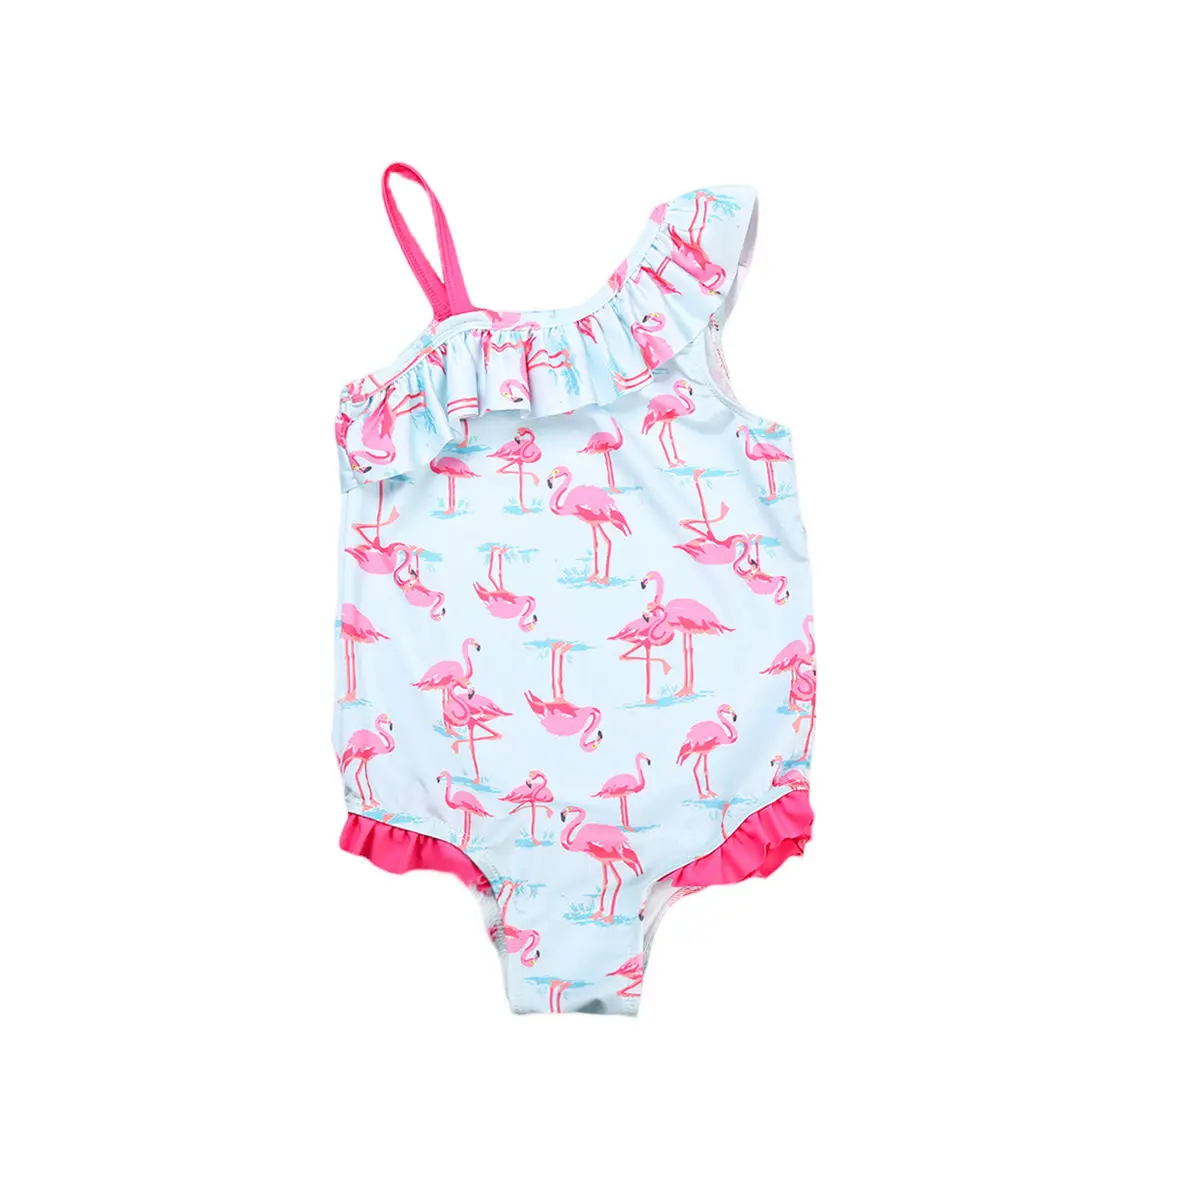 Комплект одежды для маленьких девочек, купальник-бикини с принтом фламинго, пляжная одежда, купальный костюм, летний От 2 до 7 лет без рукавов